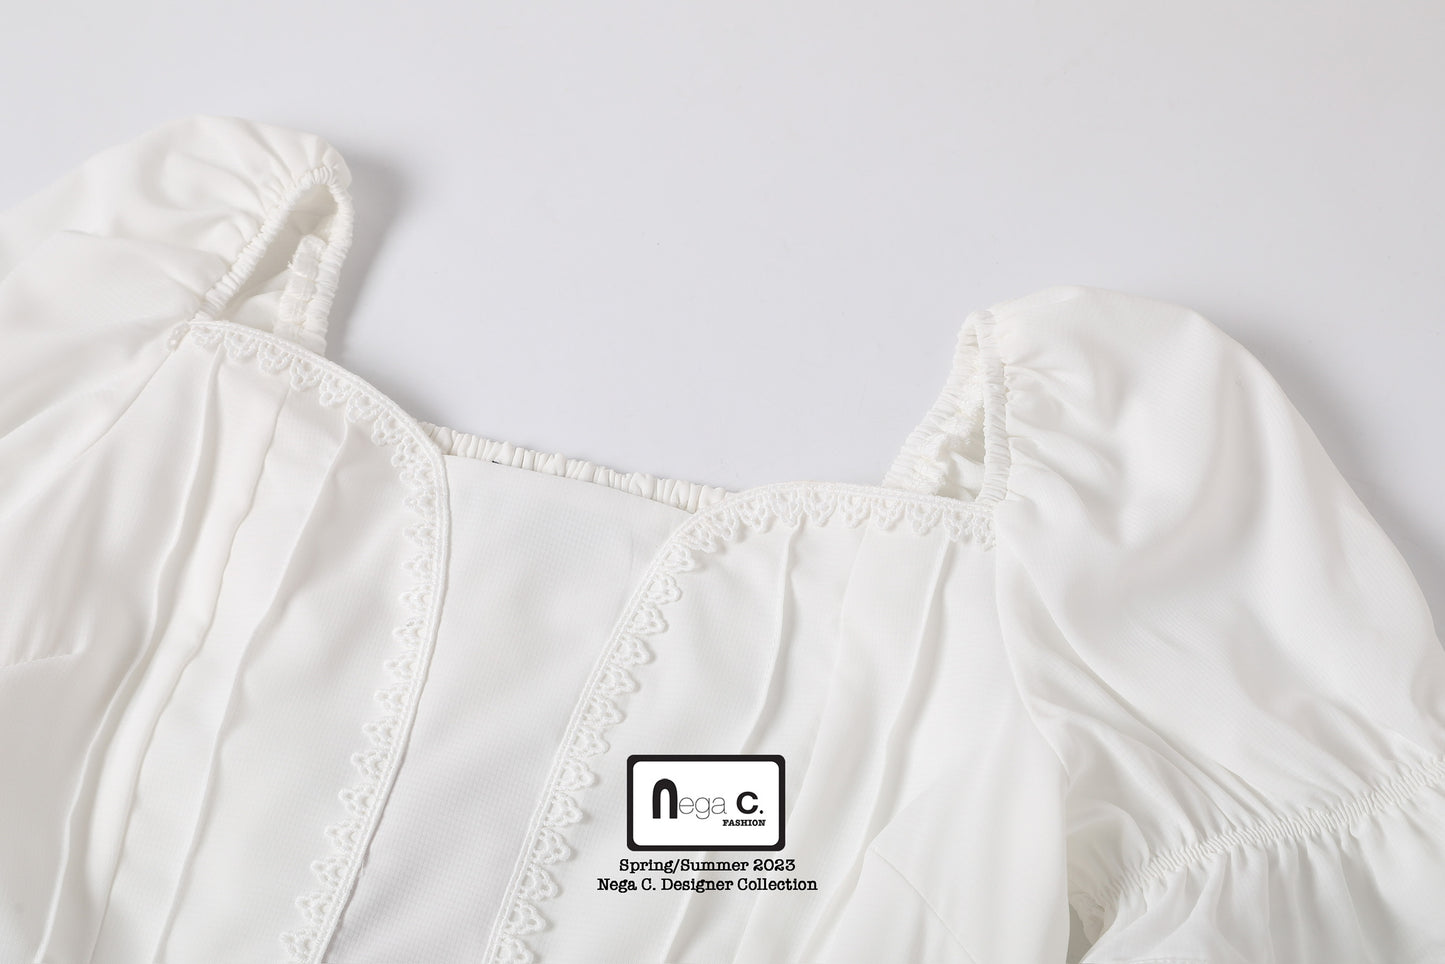 Nega C. 心型領蕾絲修腰連身裙| 白色| 有裡襯